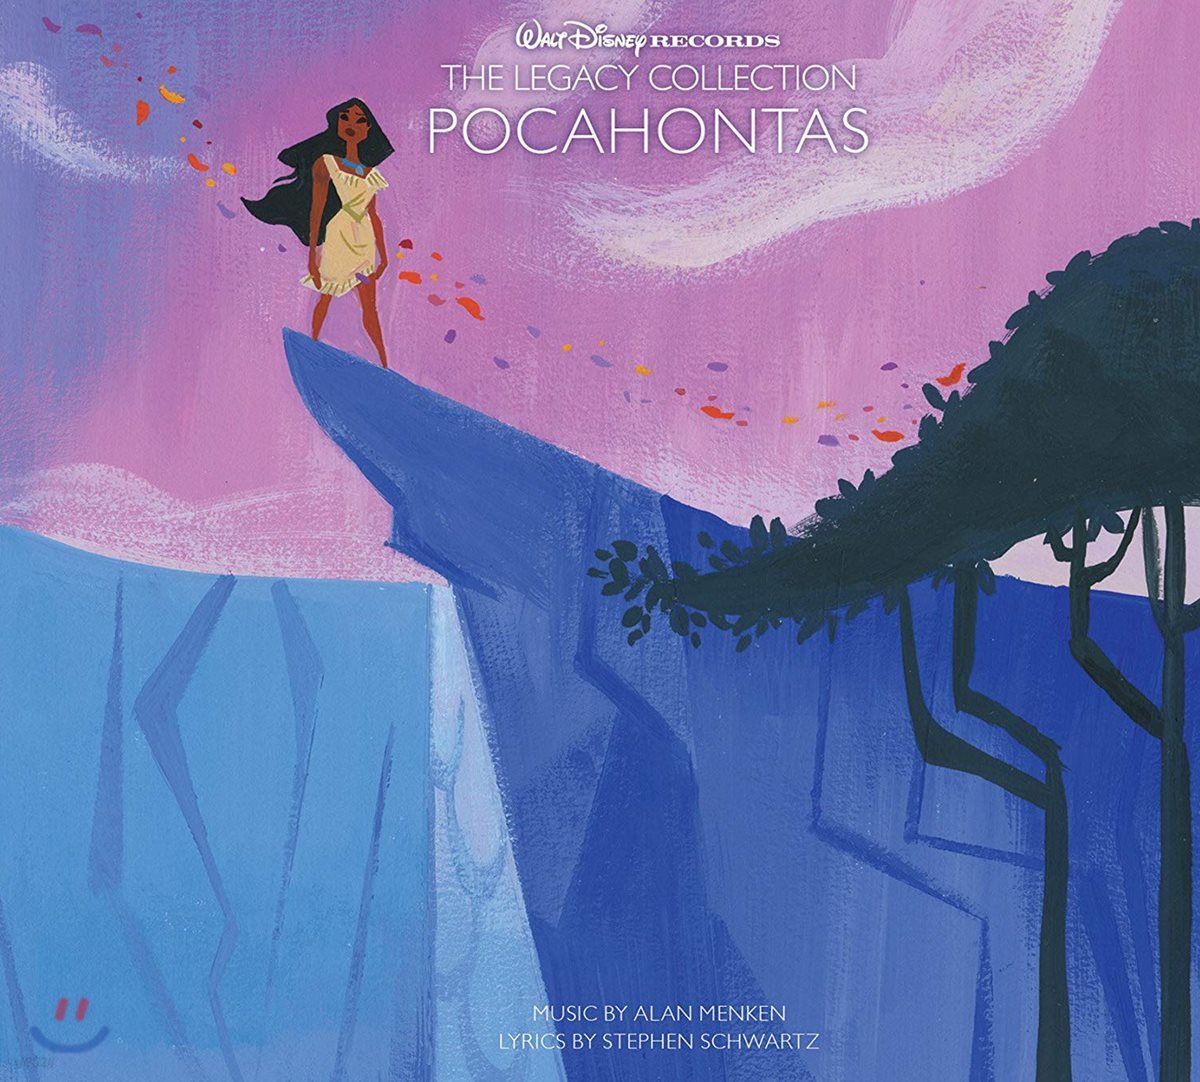 포카혼타스 애니메이션 OST (Walt Disney Records The Legacy Collection: Pocahontas)